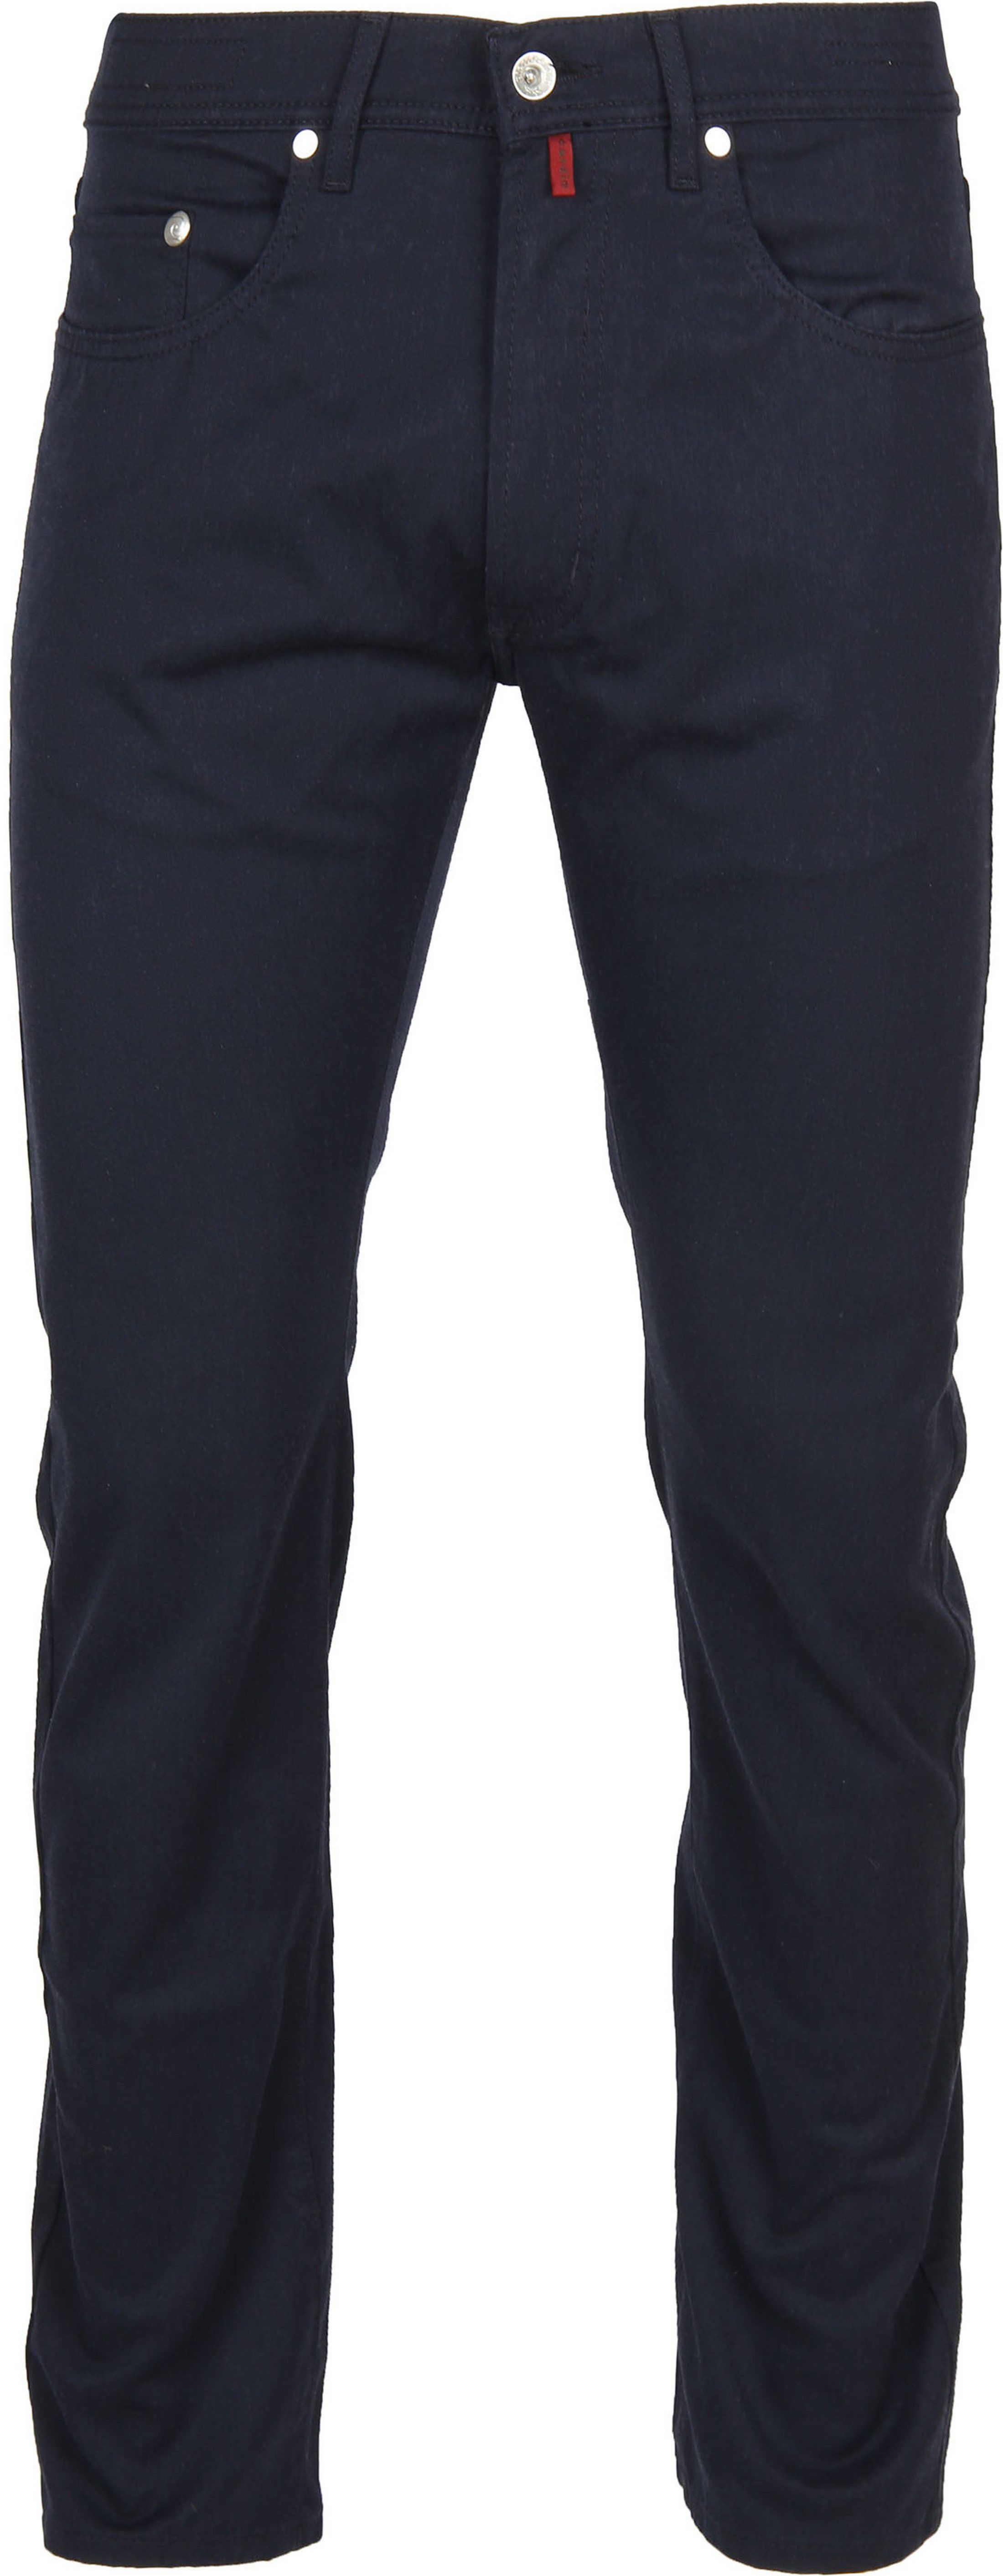 Pierre Cardin Jeans Lyon Navy Dark Blue Blue size W 32